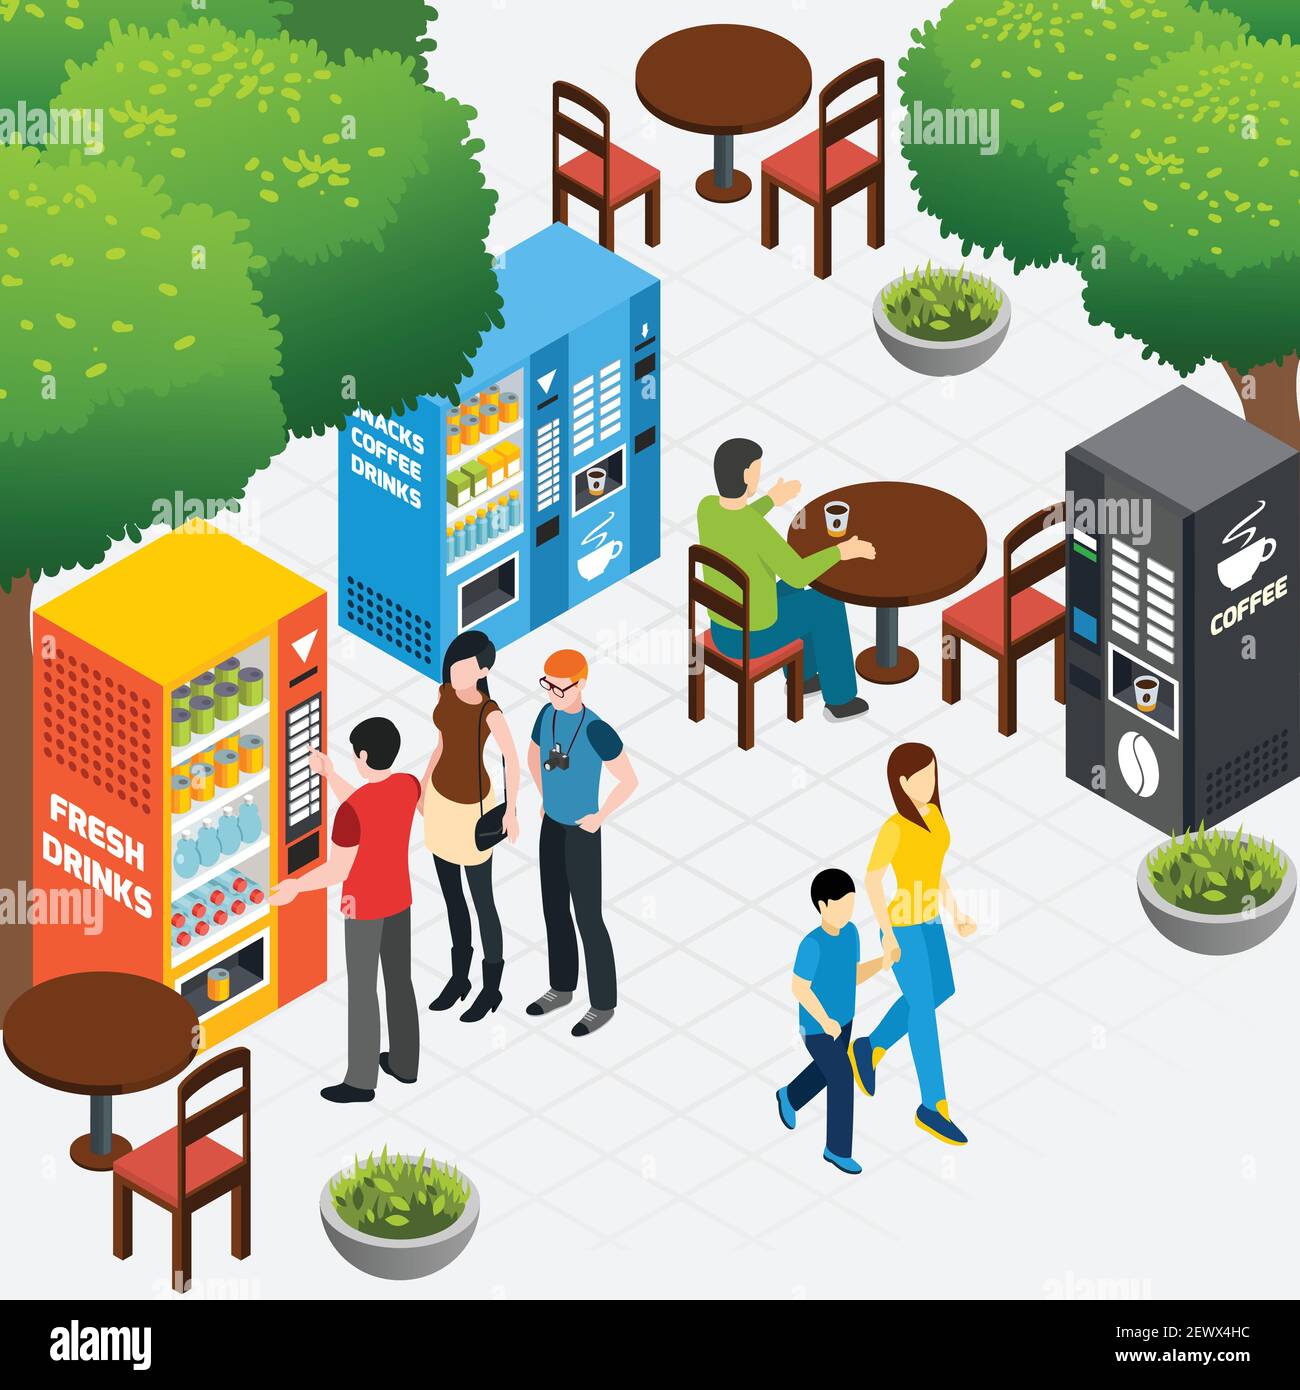 Composizione isometrica con caffè all'aperto e persone che acquistano caffè e. spuntini nei distributori automatici illustrazione vettoriale 3d Illustrazione Vettoriale